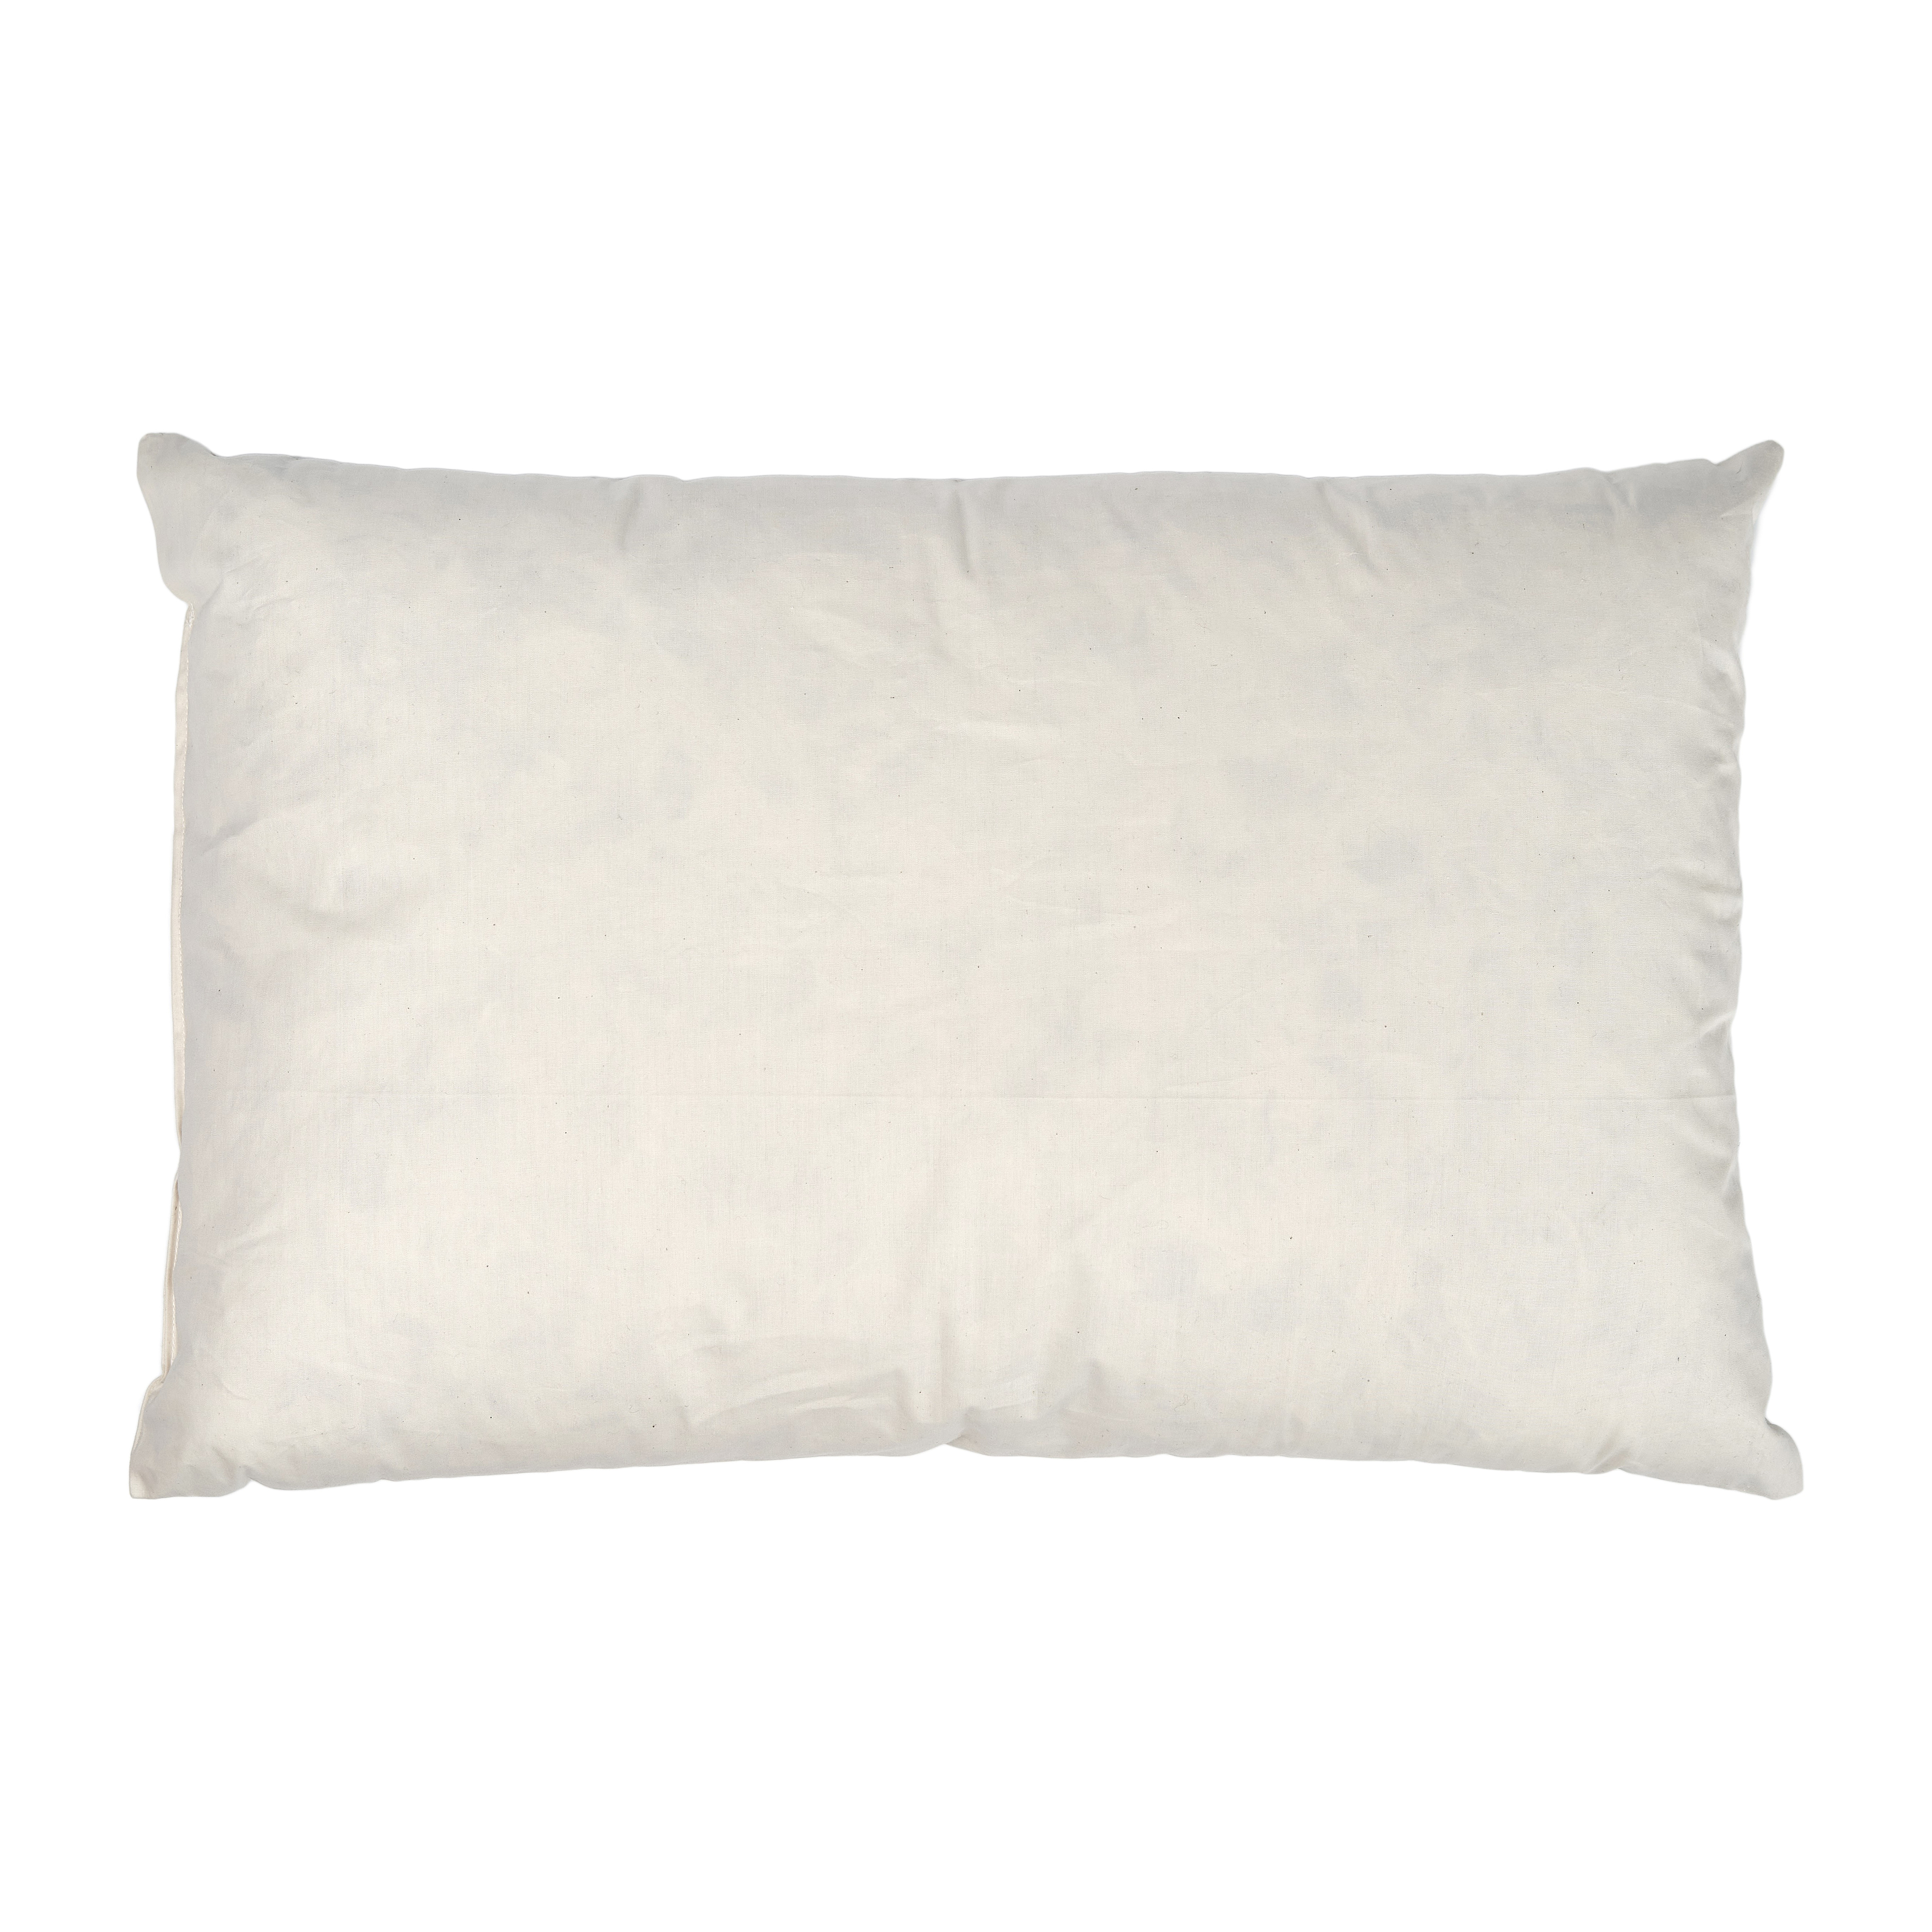 Details about   Cushion COVER 40x40 Pillow Case 2 Colour in 17 Sizes Decorative Pillow 100% Cotton show original title 